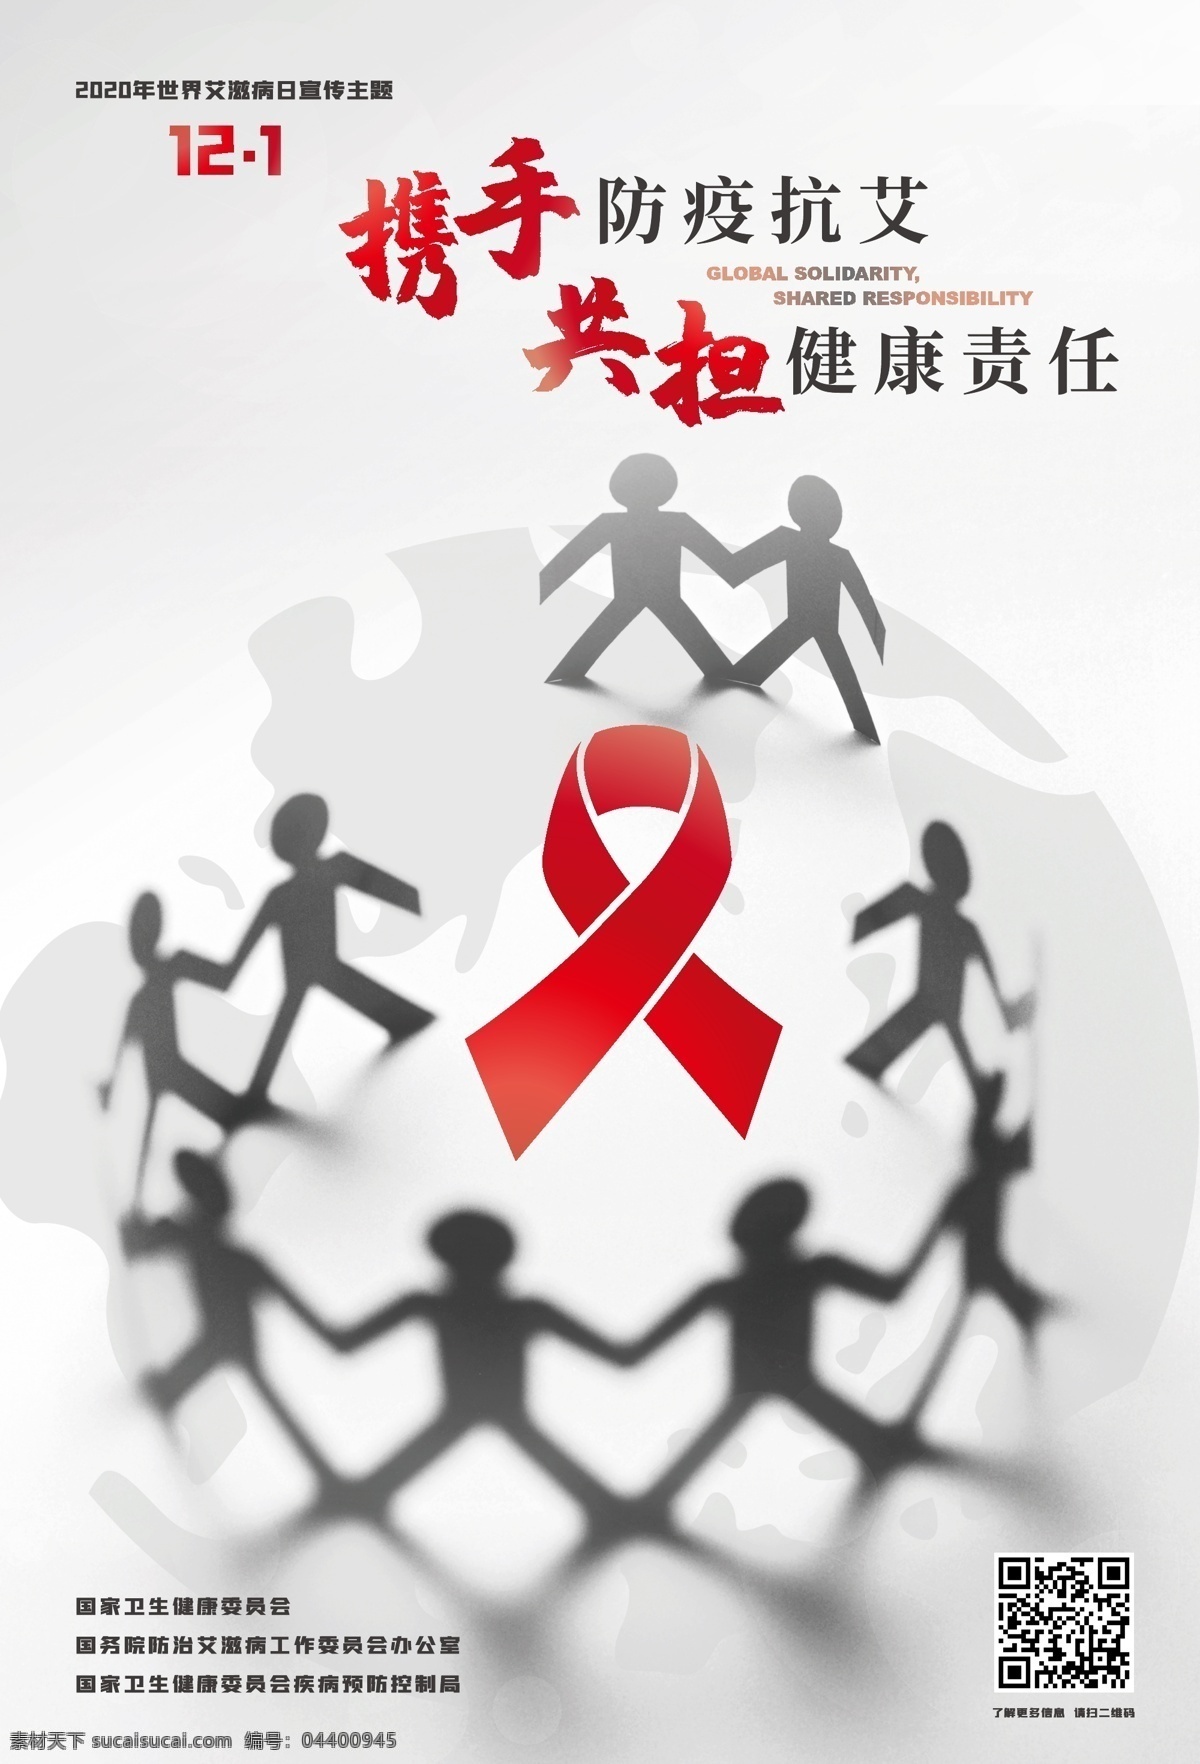 2020 年 世界 艾滋病 日 主题 海报 2020年 世界艾滋病日 携手防疫抗艾 共担健康责任